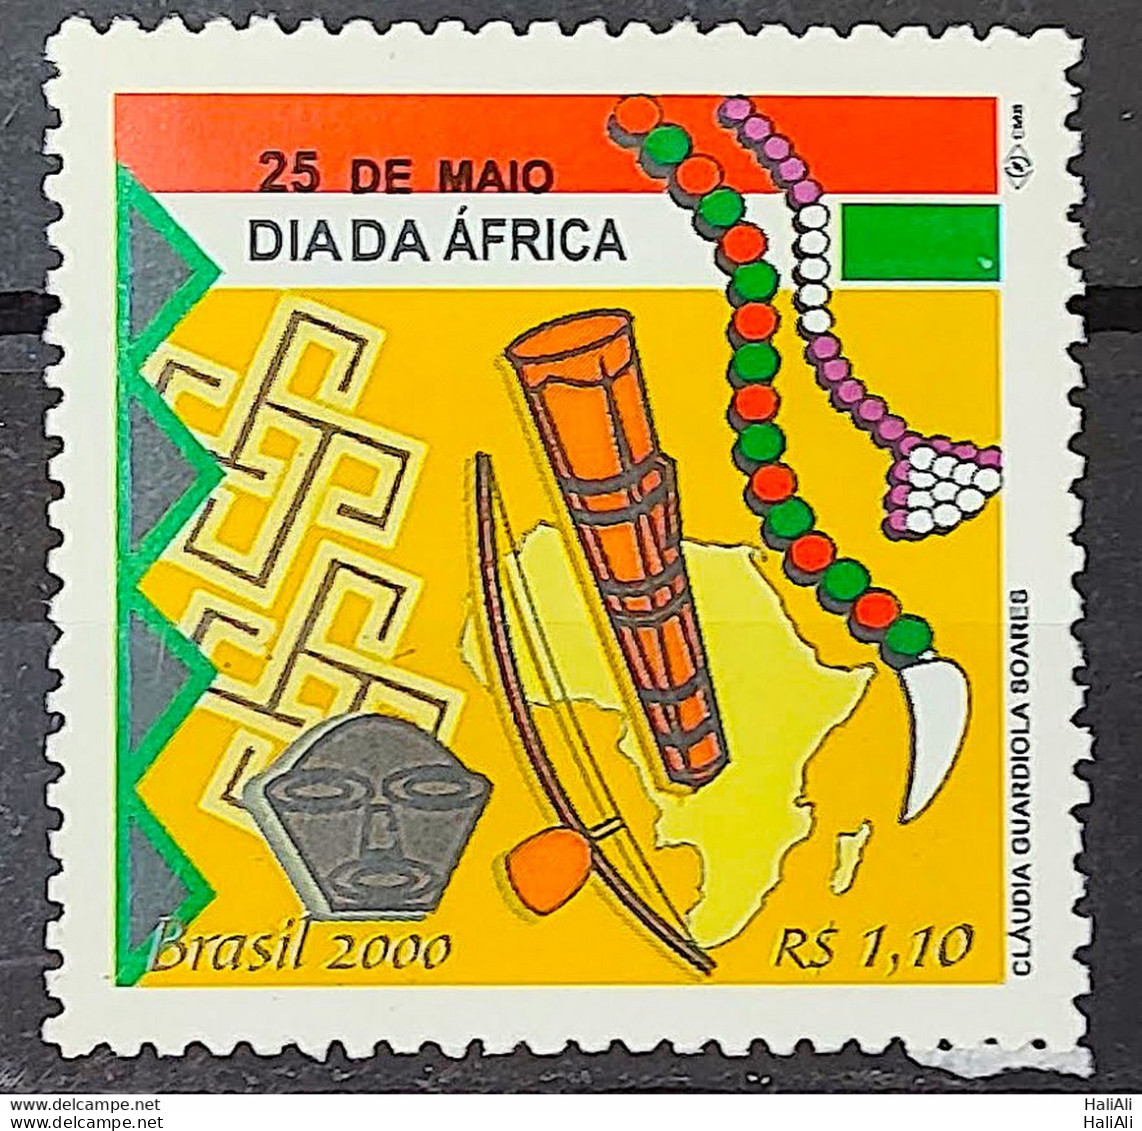 C 2281 Brazil Stamp Africa Day Afro Berimbau Culture Drum Music Map 2000 - Unused Stamps